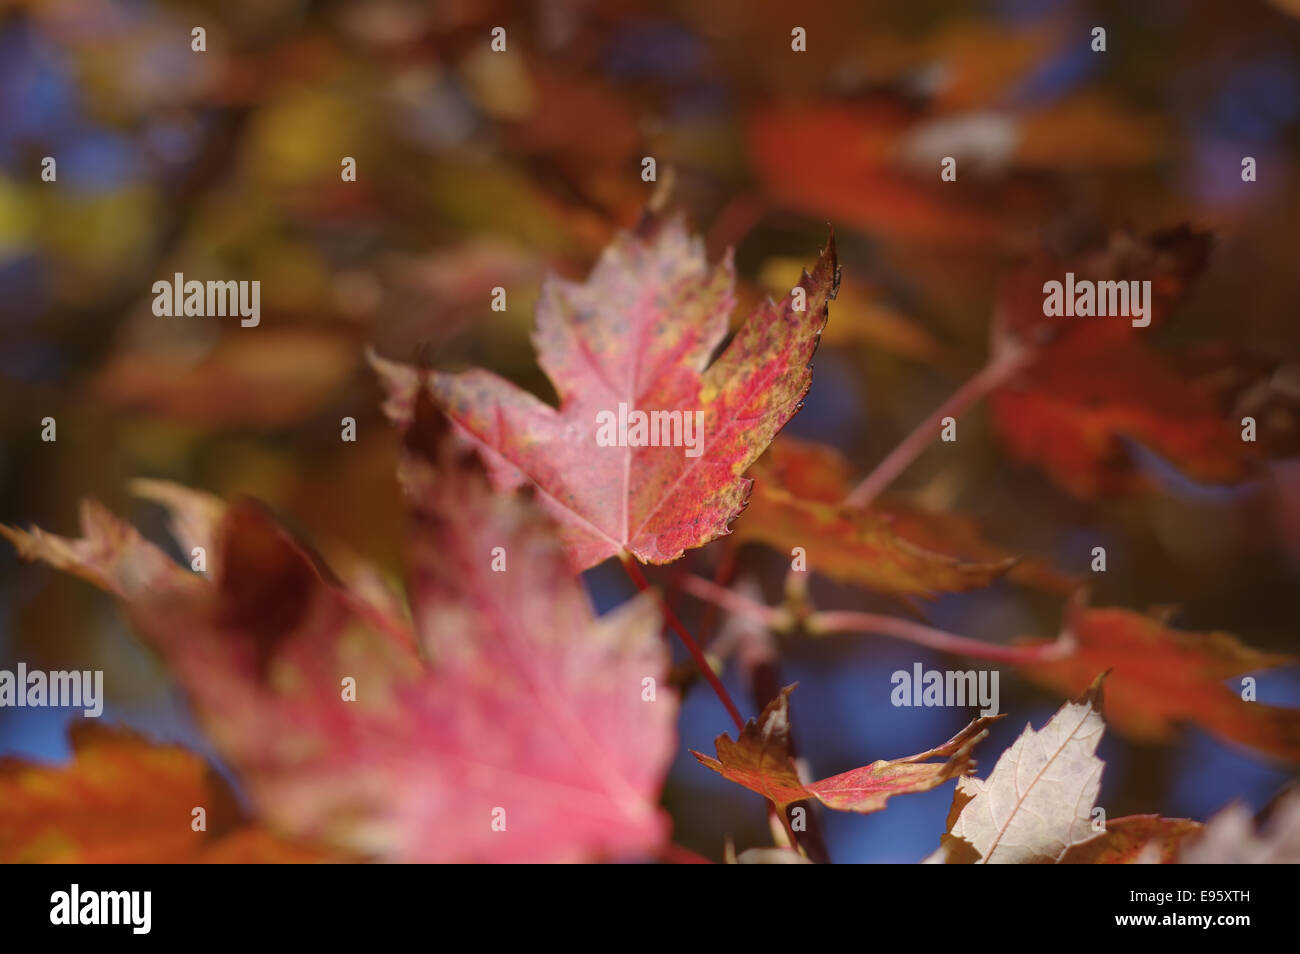 Autumn-leaves--maple-E95XTH.jpg